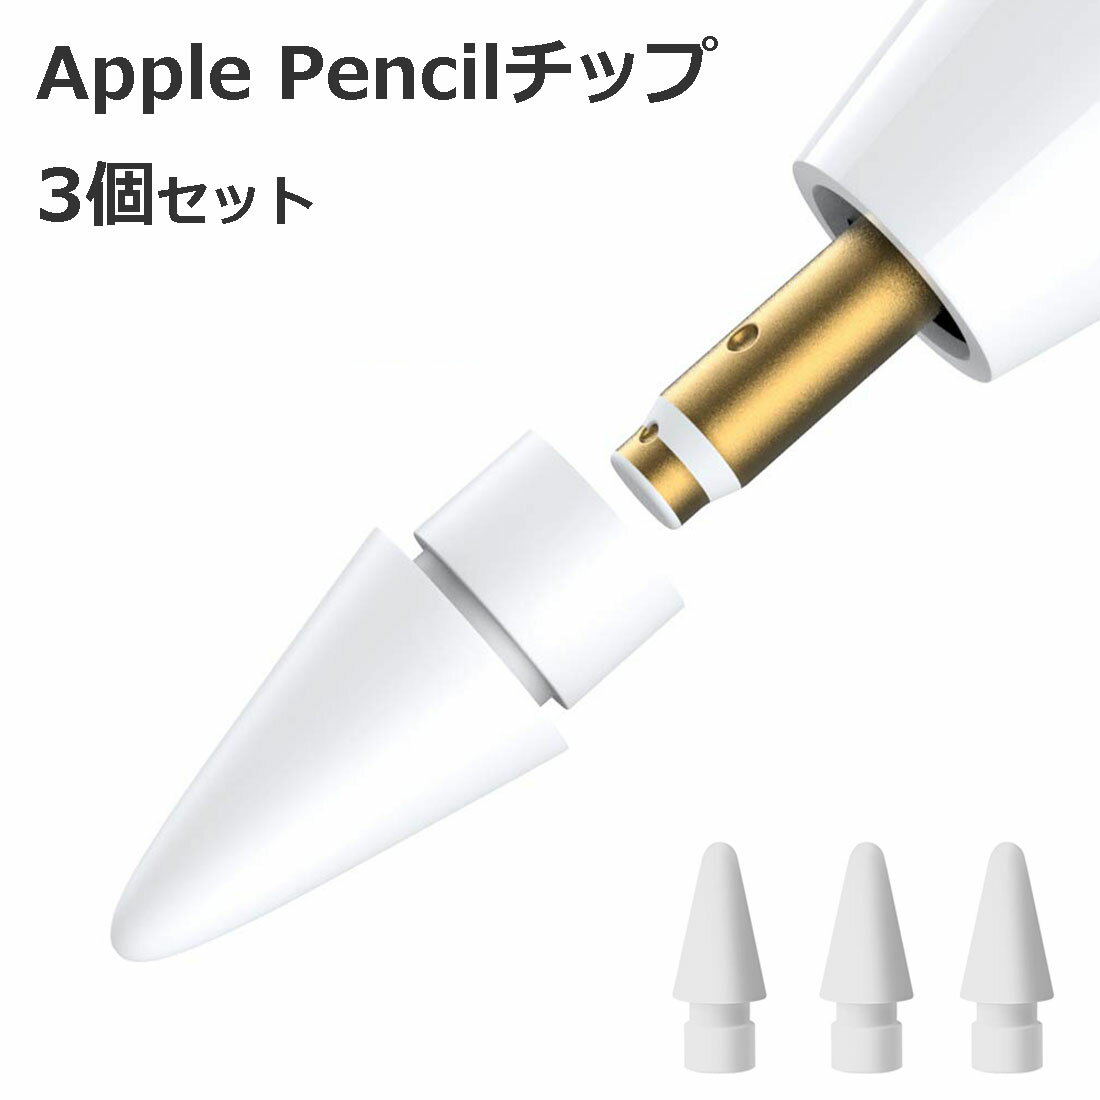   Apple Pencil チップ ペン先 アップルペンシル Appleペンシル キャップ 交換用 芯 iPad Pro Mini 第一世代 第二世代 第1世代 第2世代 ホワイト 白 White Agenstar